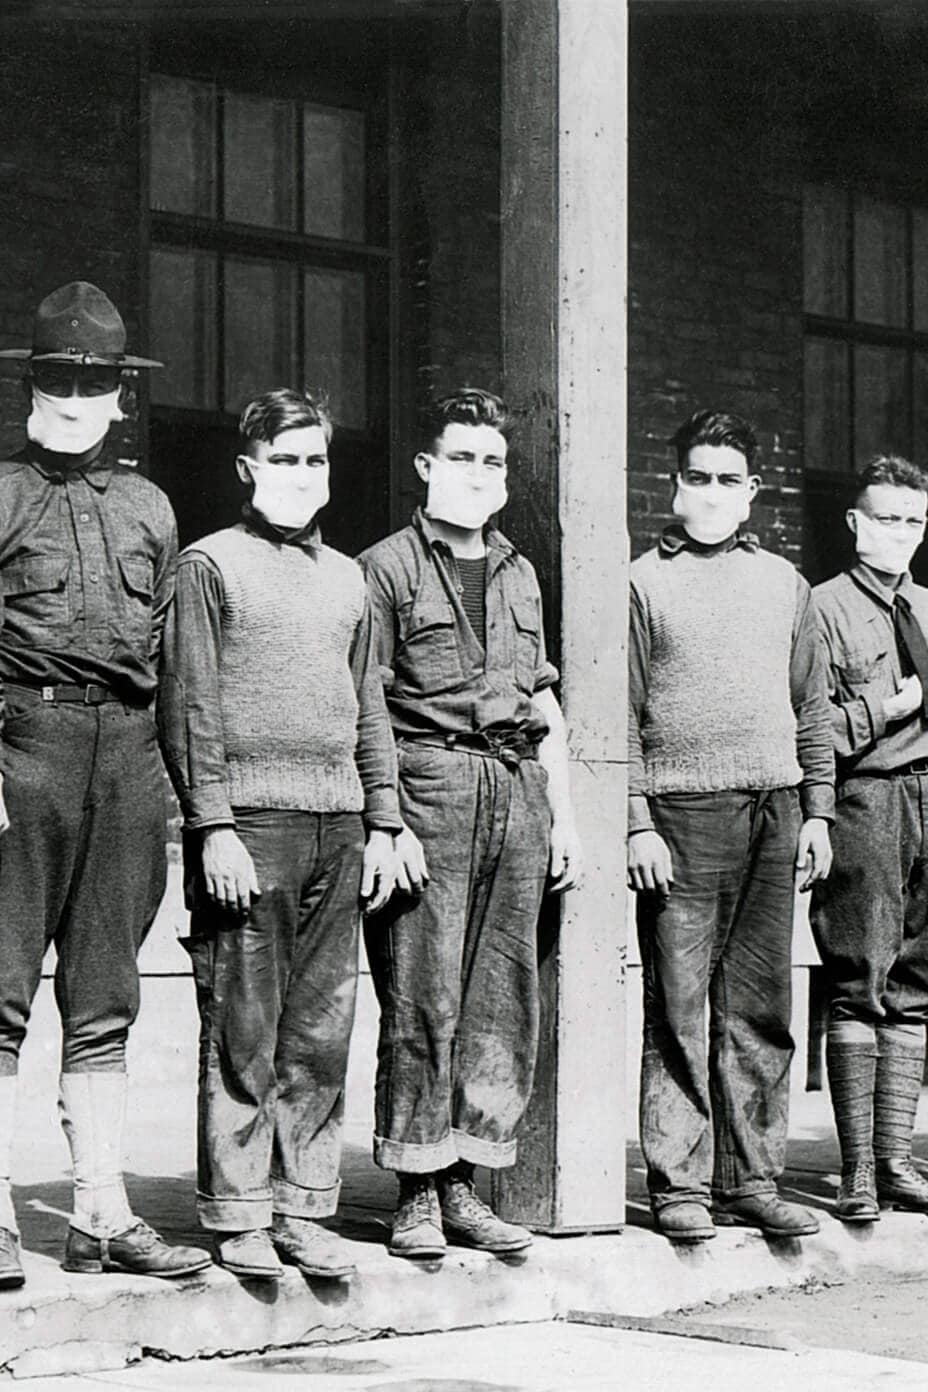 رجال جيش واقفون مرتدين كمامات في مستشفى أثناء جائحة الإنفلونزا عامي 1918 و1919